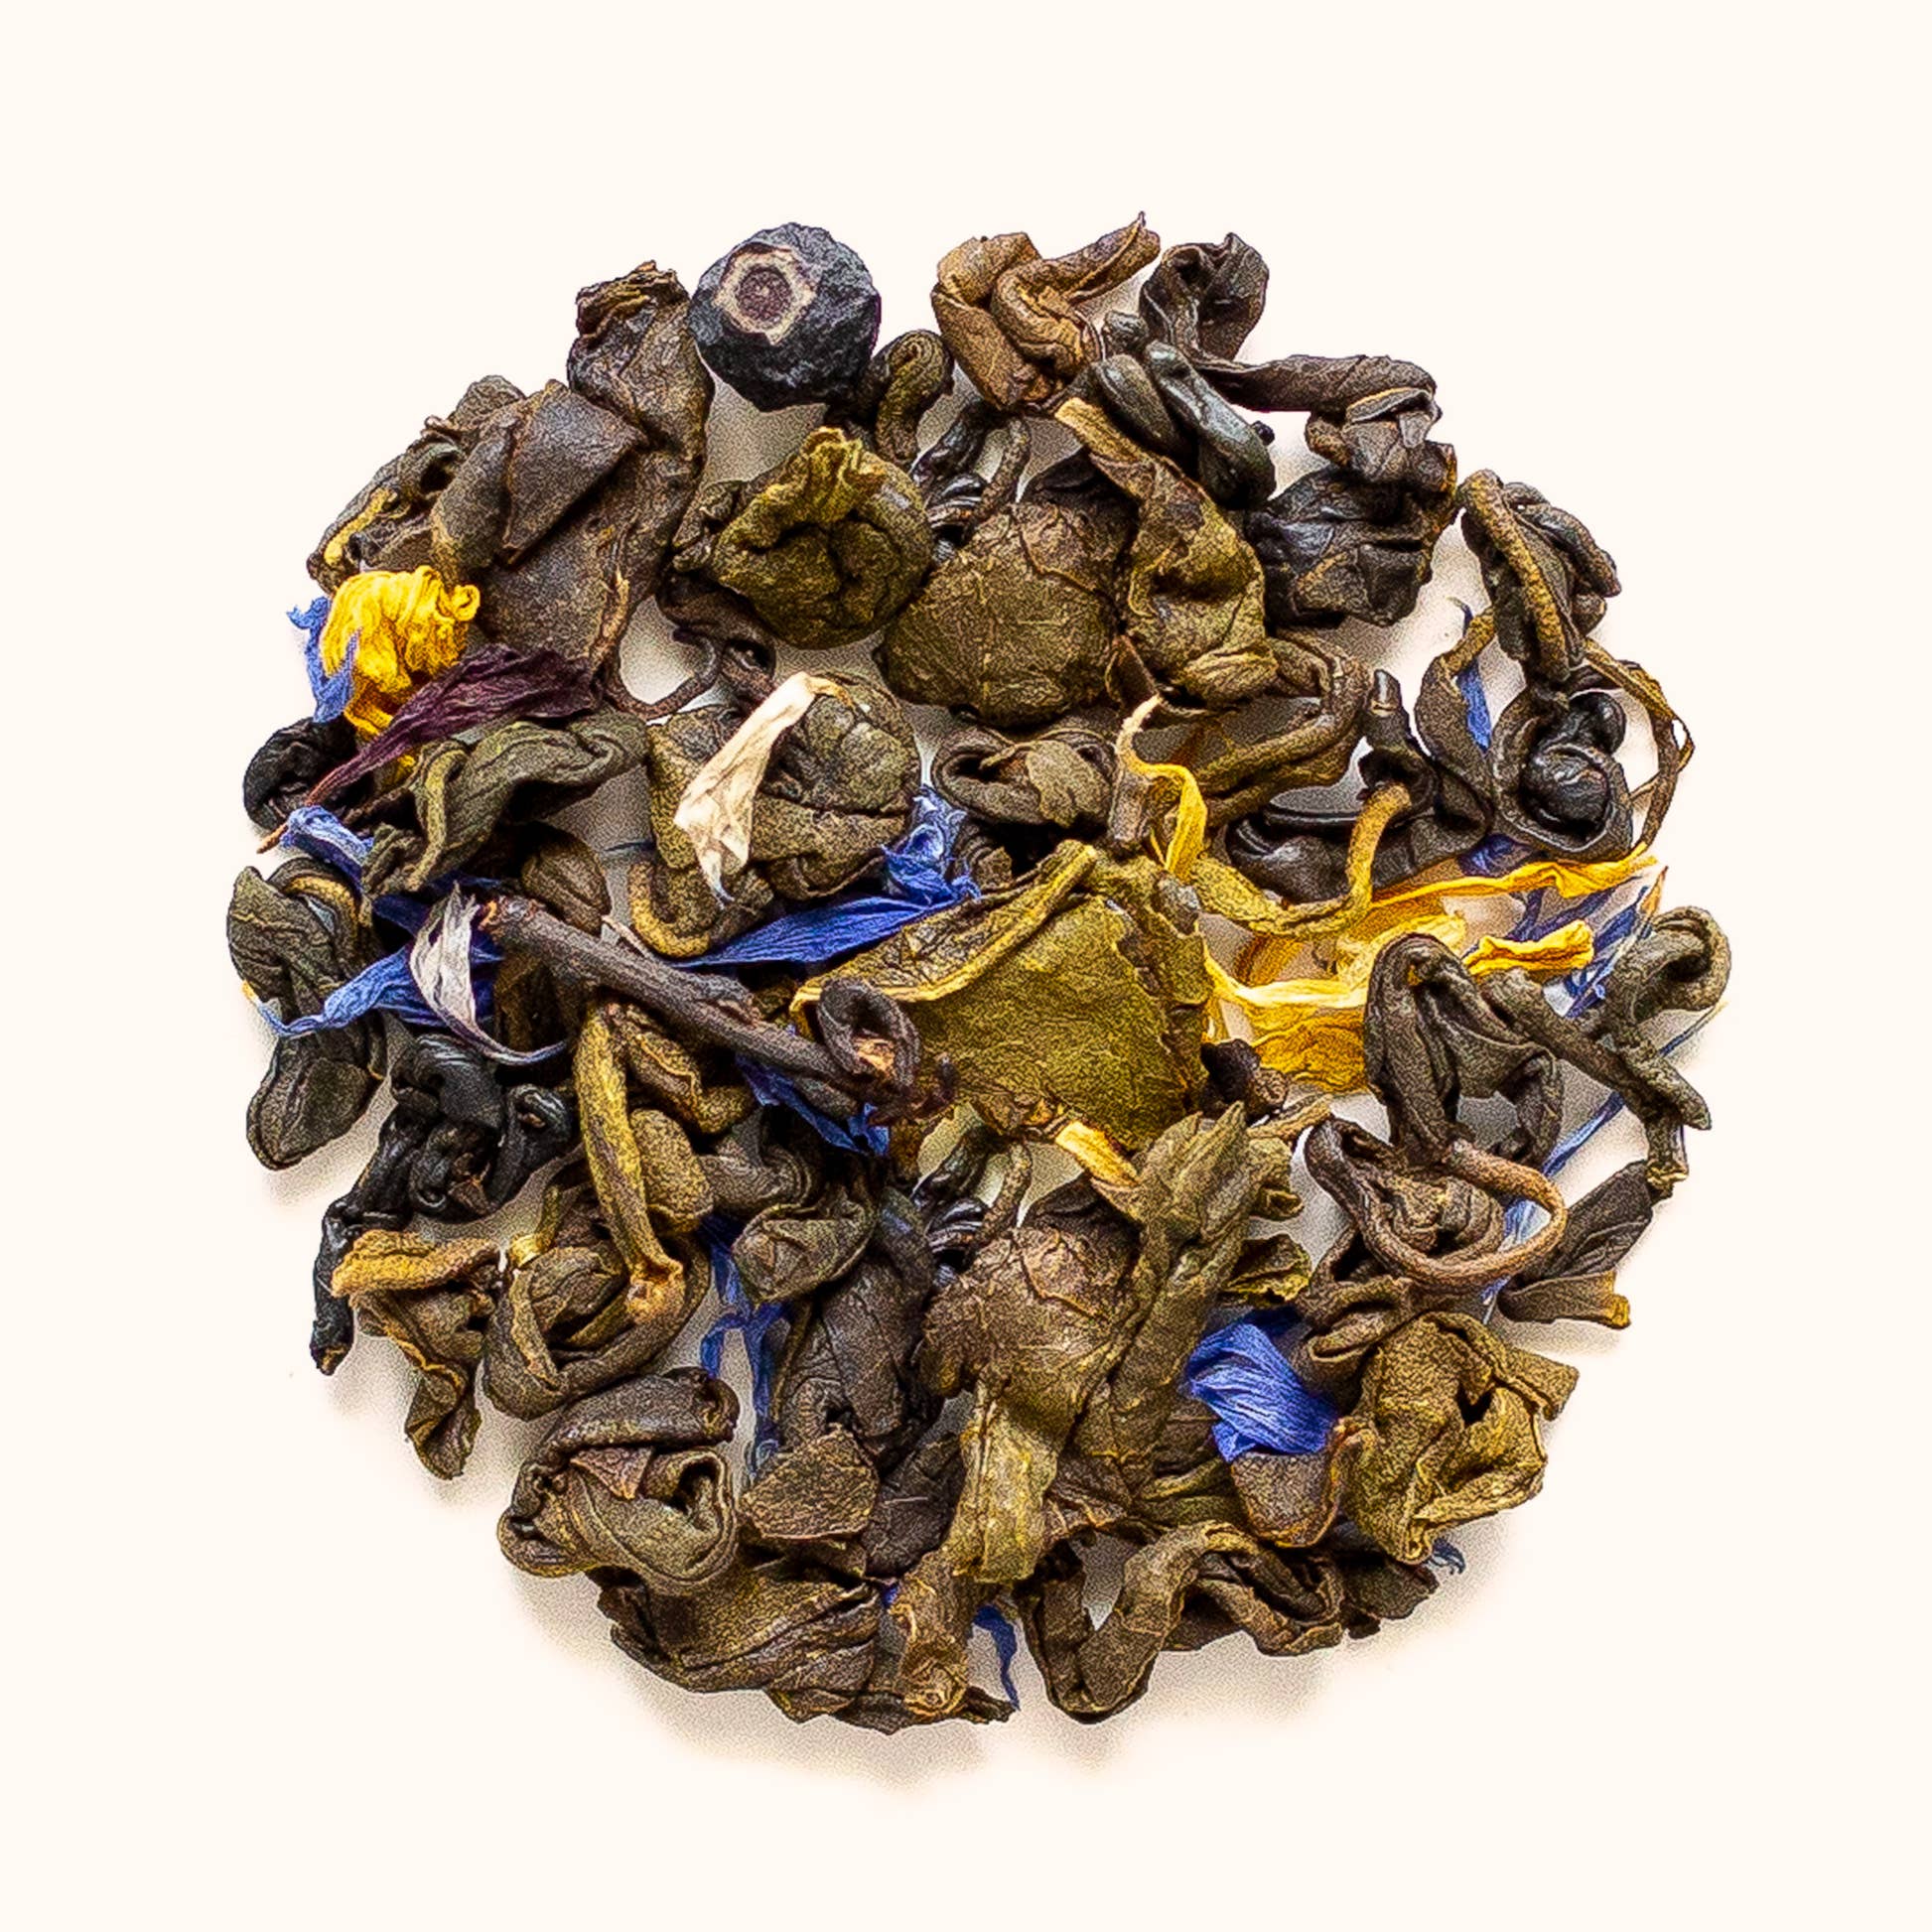 Imblueberry by Dryad Tea loose leaf tea sample